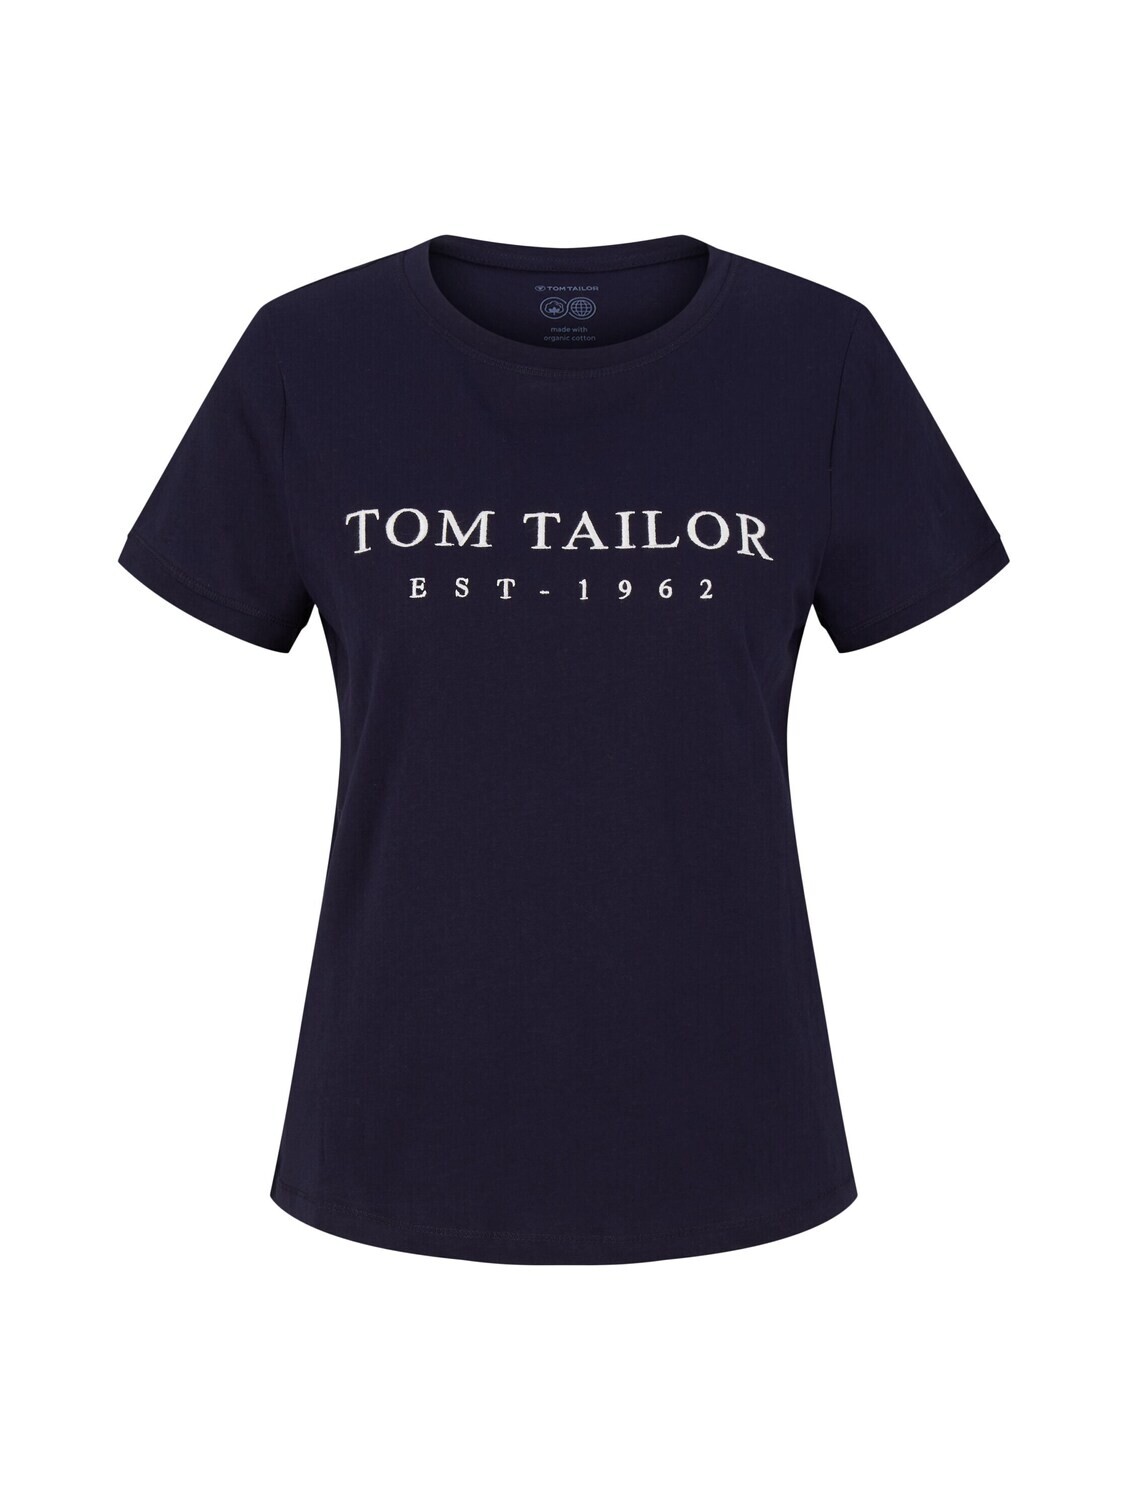 Tom Tailor t-shirt met print, navy midnight blue